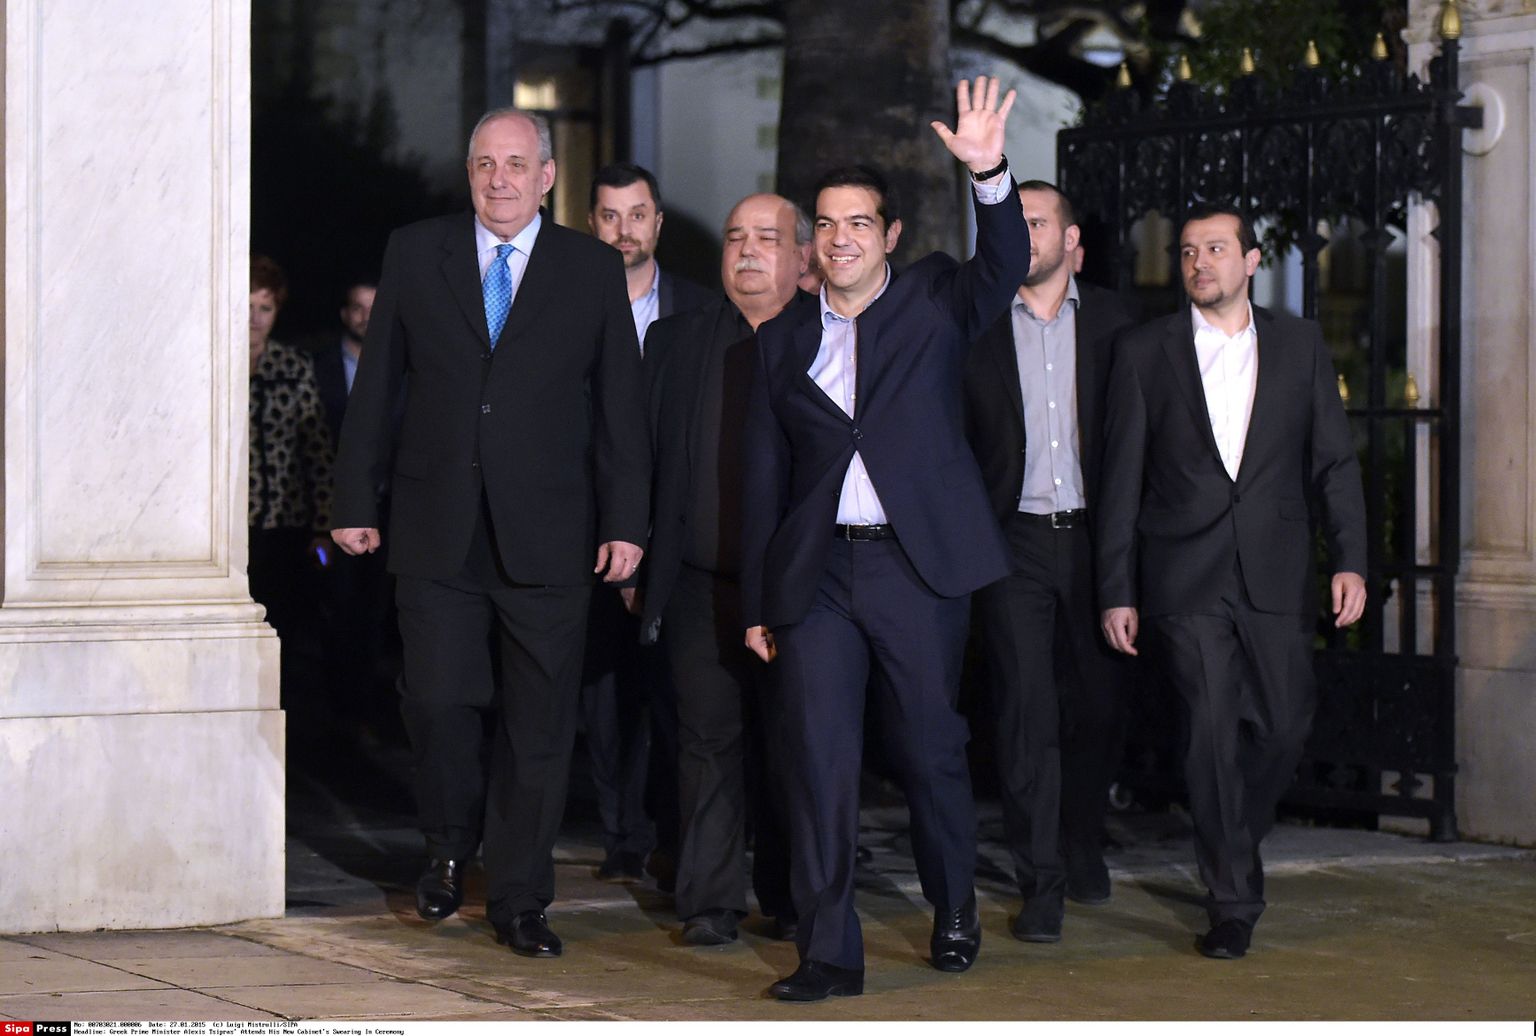 Kreeka peaminister Alexis Tsipras koos oma uue valitsuskabinetiga.